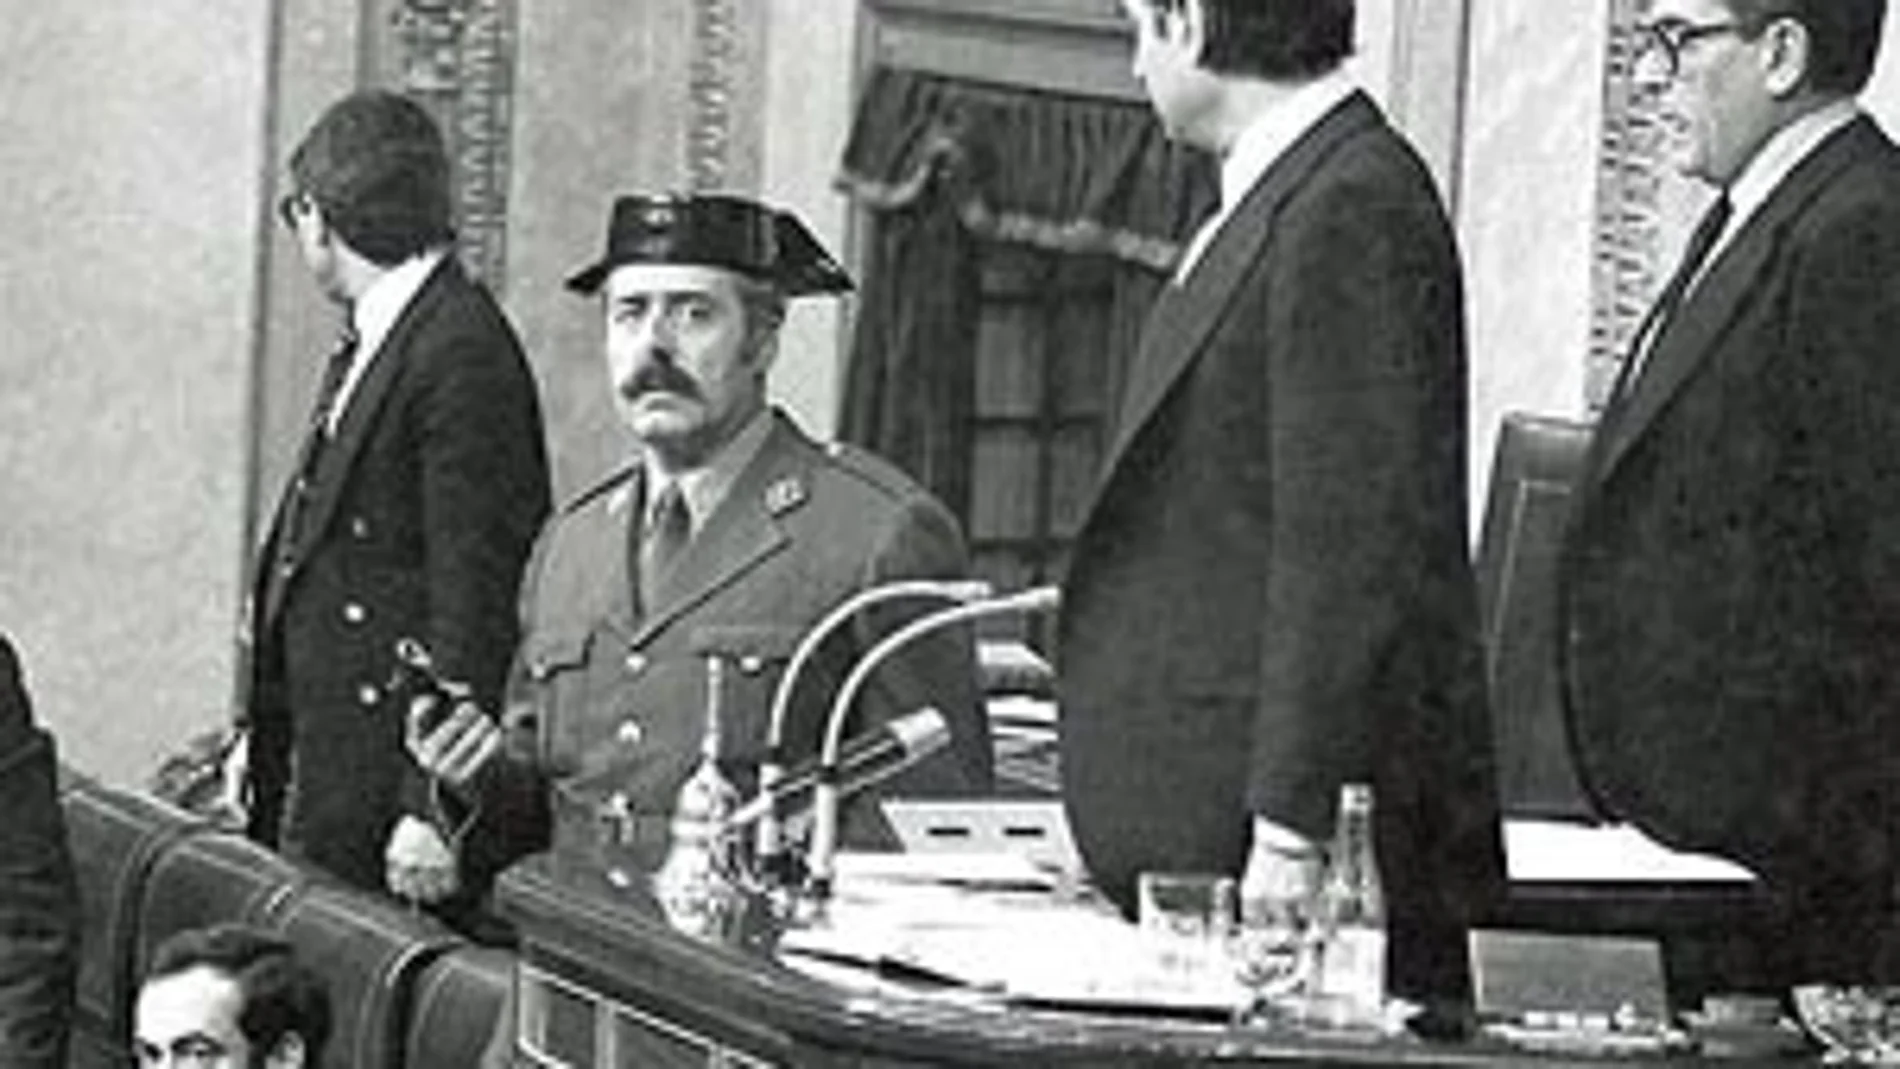 ¿Qué sucedió realmente en España el 23 de febrero de 1981?